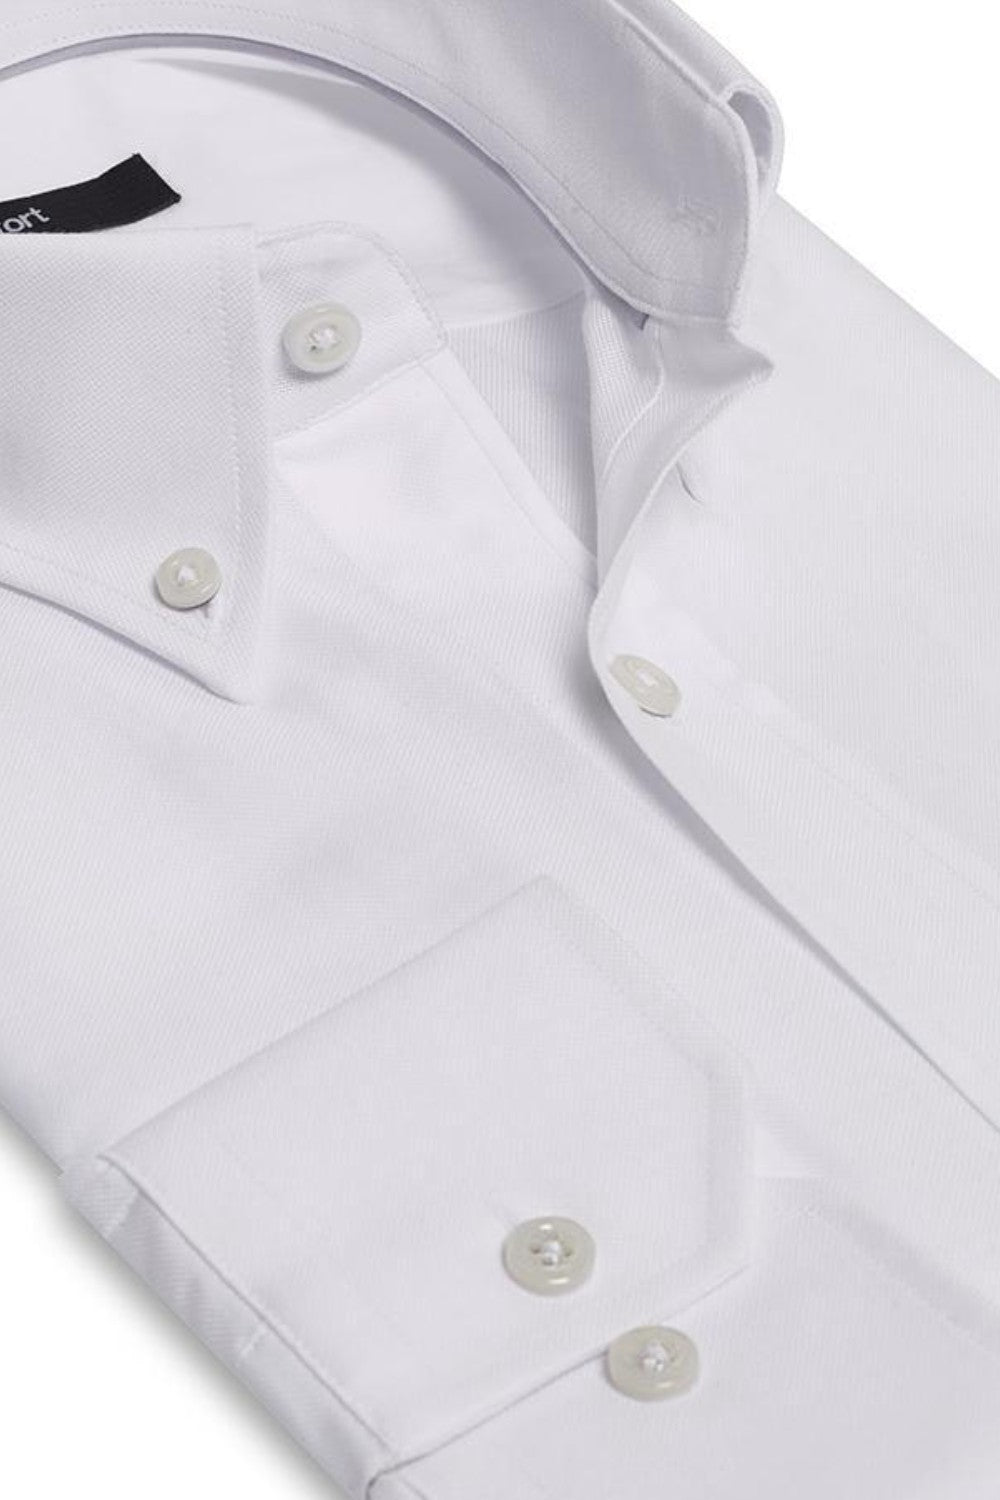 FRANKLIN(White)LUXURY CLASSIC OXFORD DRESS SHIRT CONTEMP. FIT HIGH-END 100% PREM. COTTON